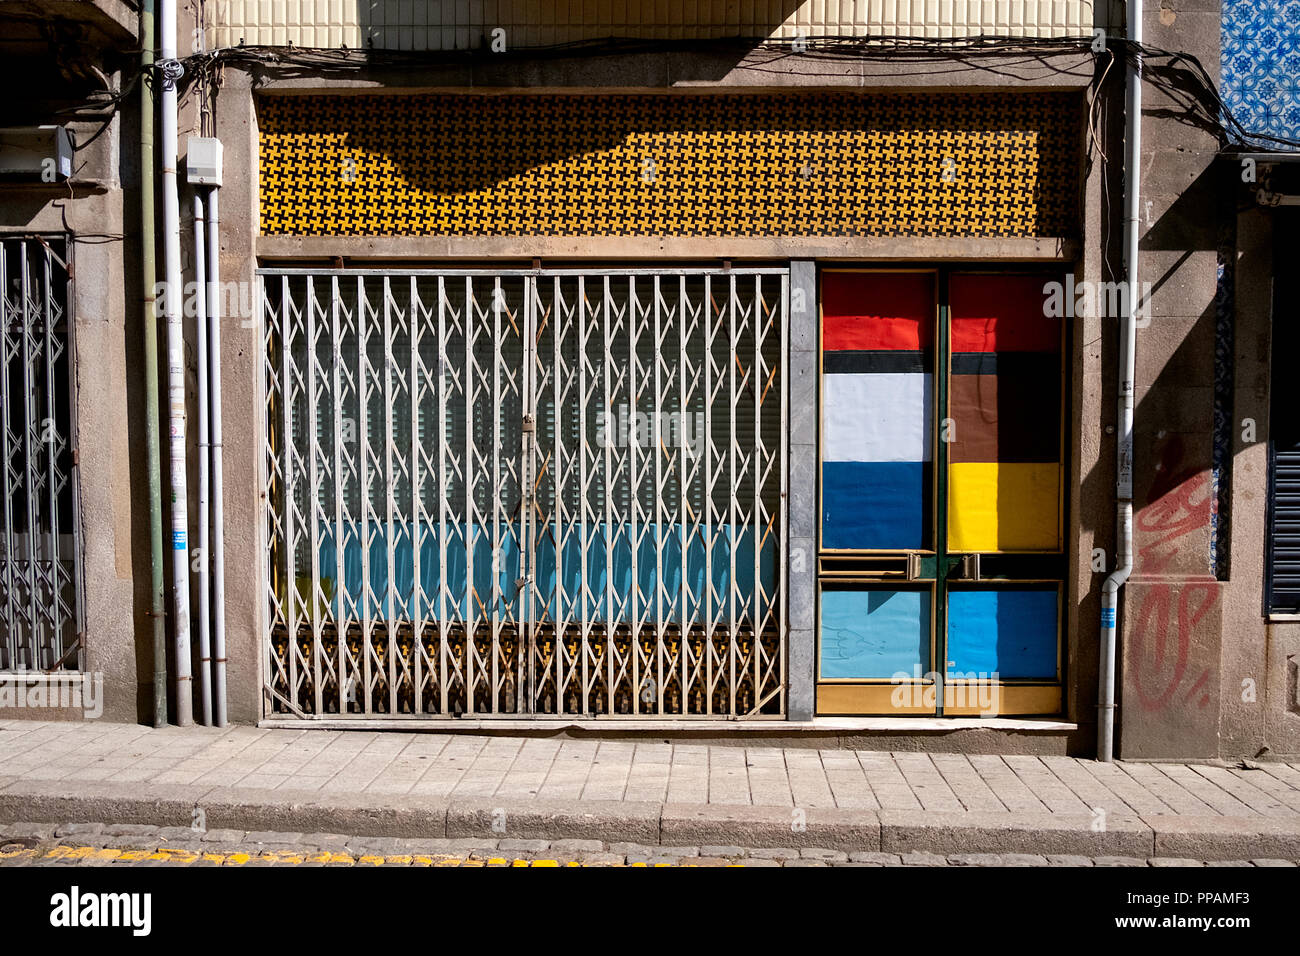 Fachada de un viejo almacén abandonado y con coloridos azulejos portugueses y super colorido inspirado la puerta Mondrian pinturas y fotografías. Foto de stock